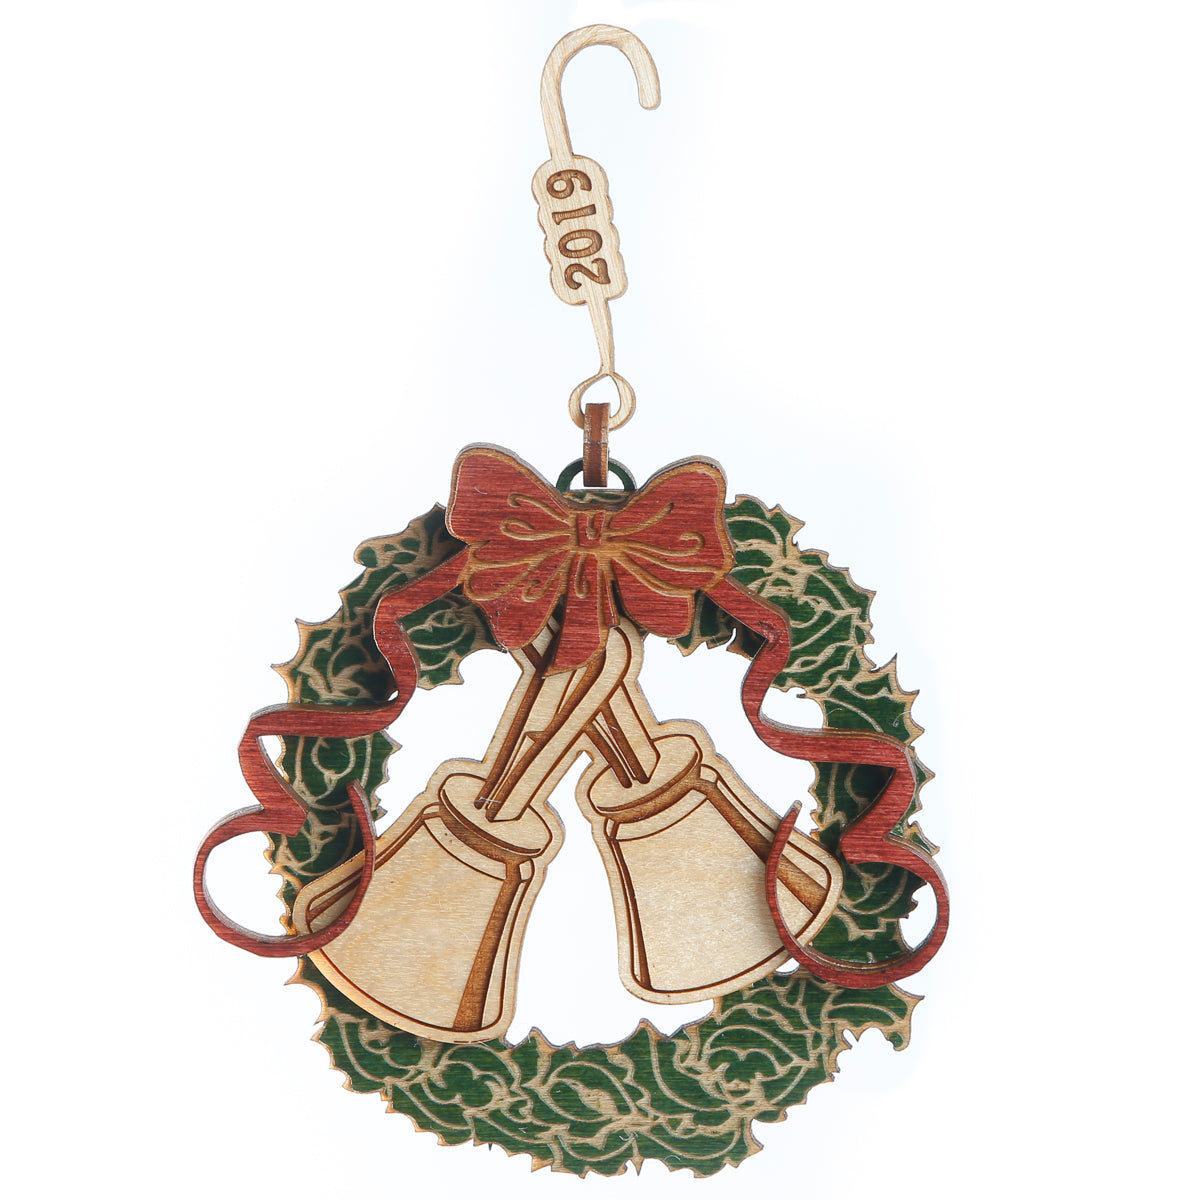 Wooden Ornament - handbells & holly